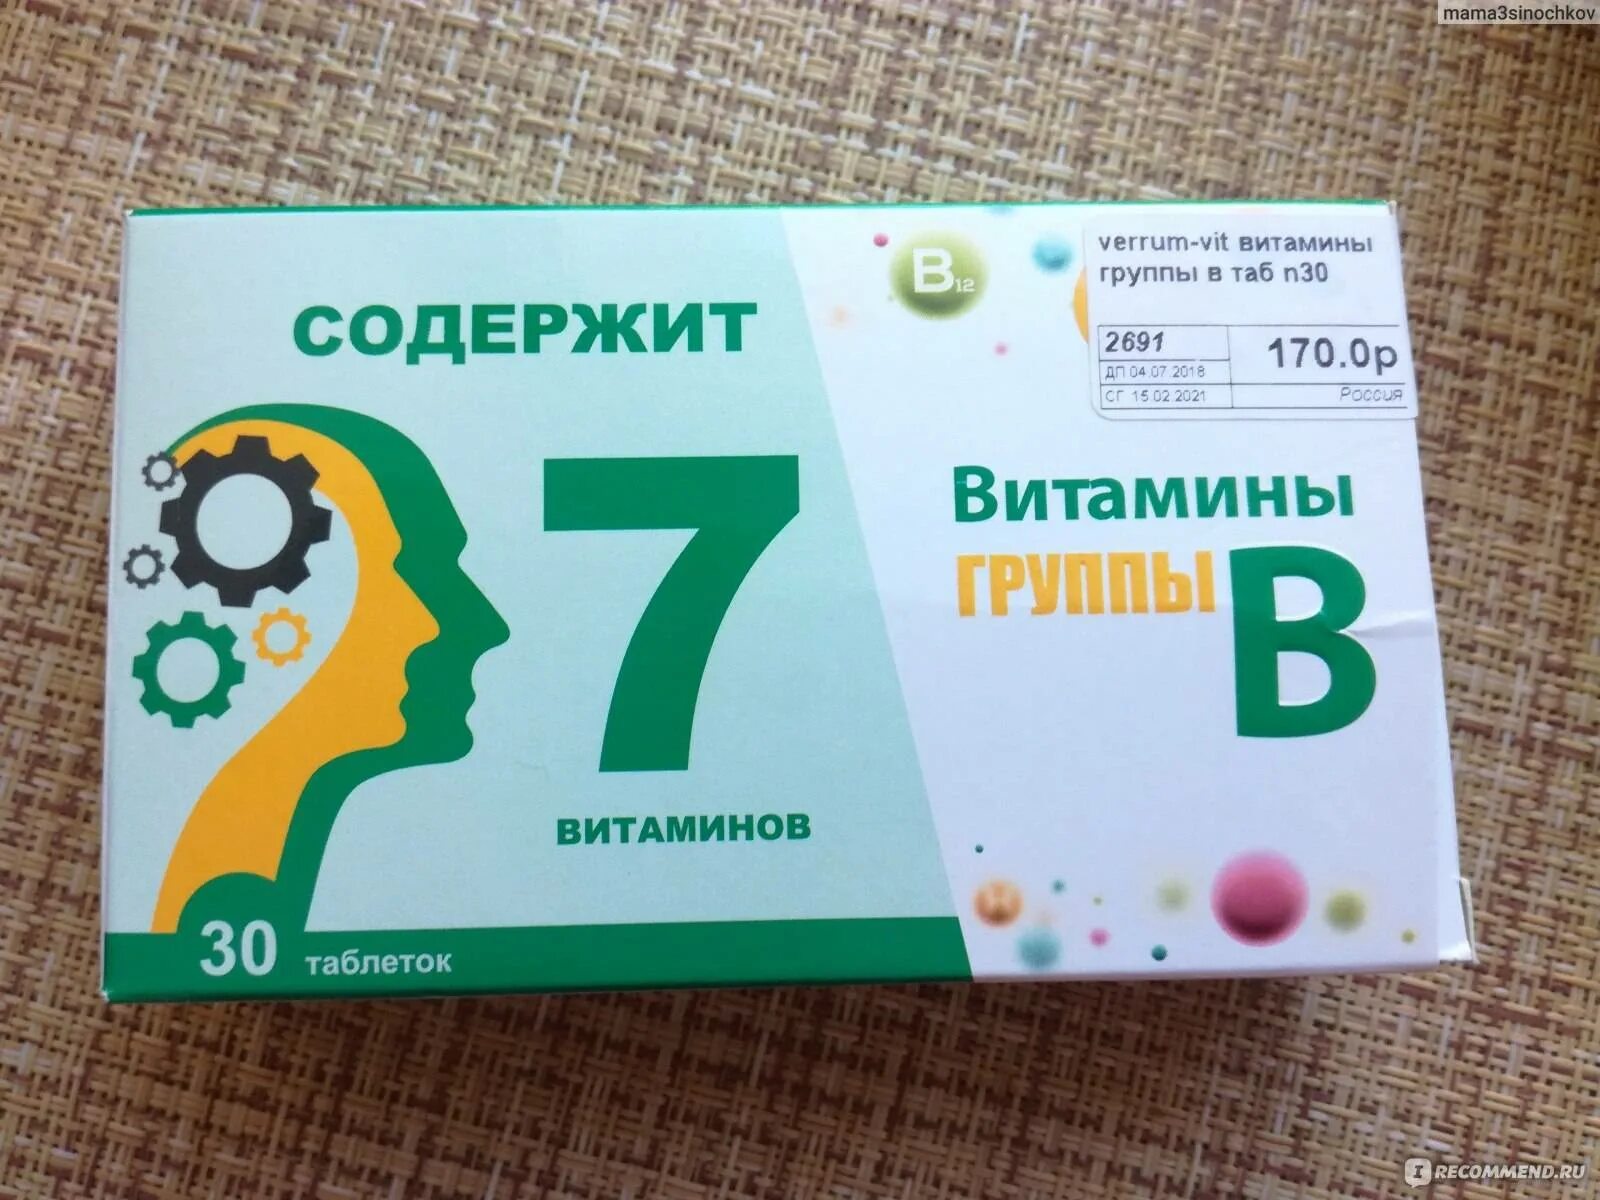 Витаминный комплекс в12 в6. Комплекс витаминов в2 в6 в12. Витаминный комплекс в6 в9 в12. Витамины б1 б6 б12 в таблетках.